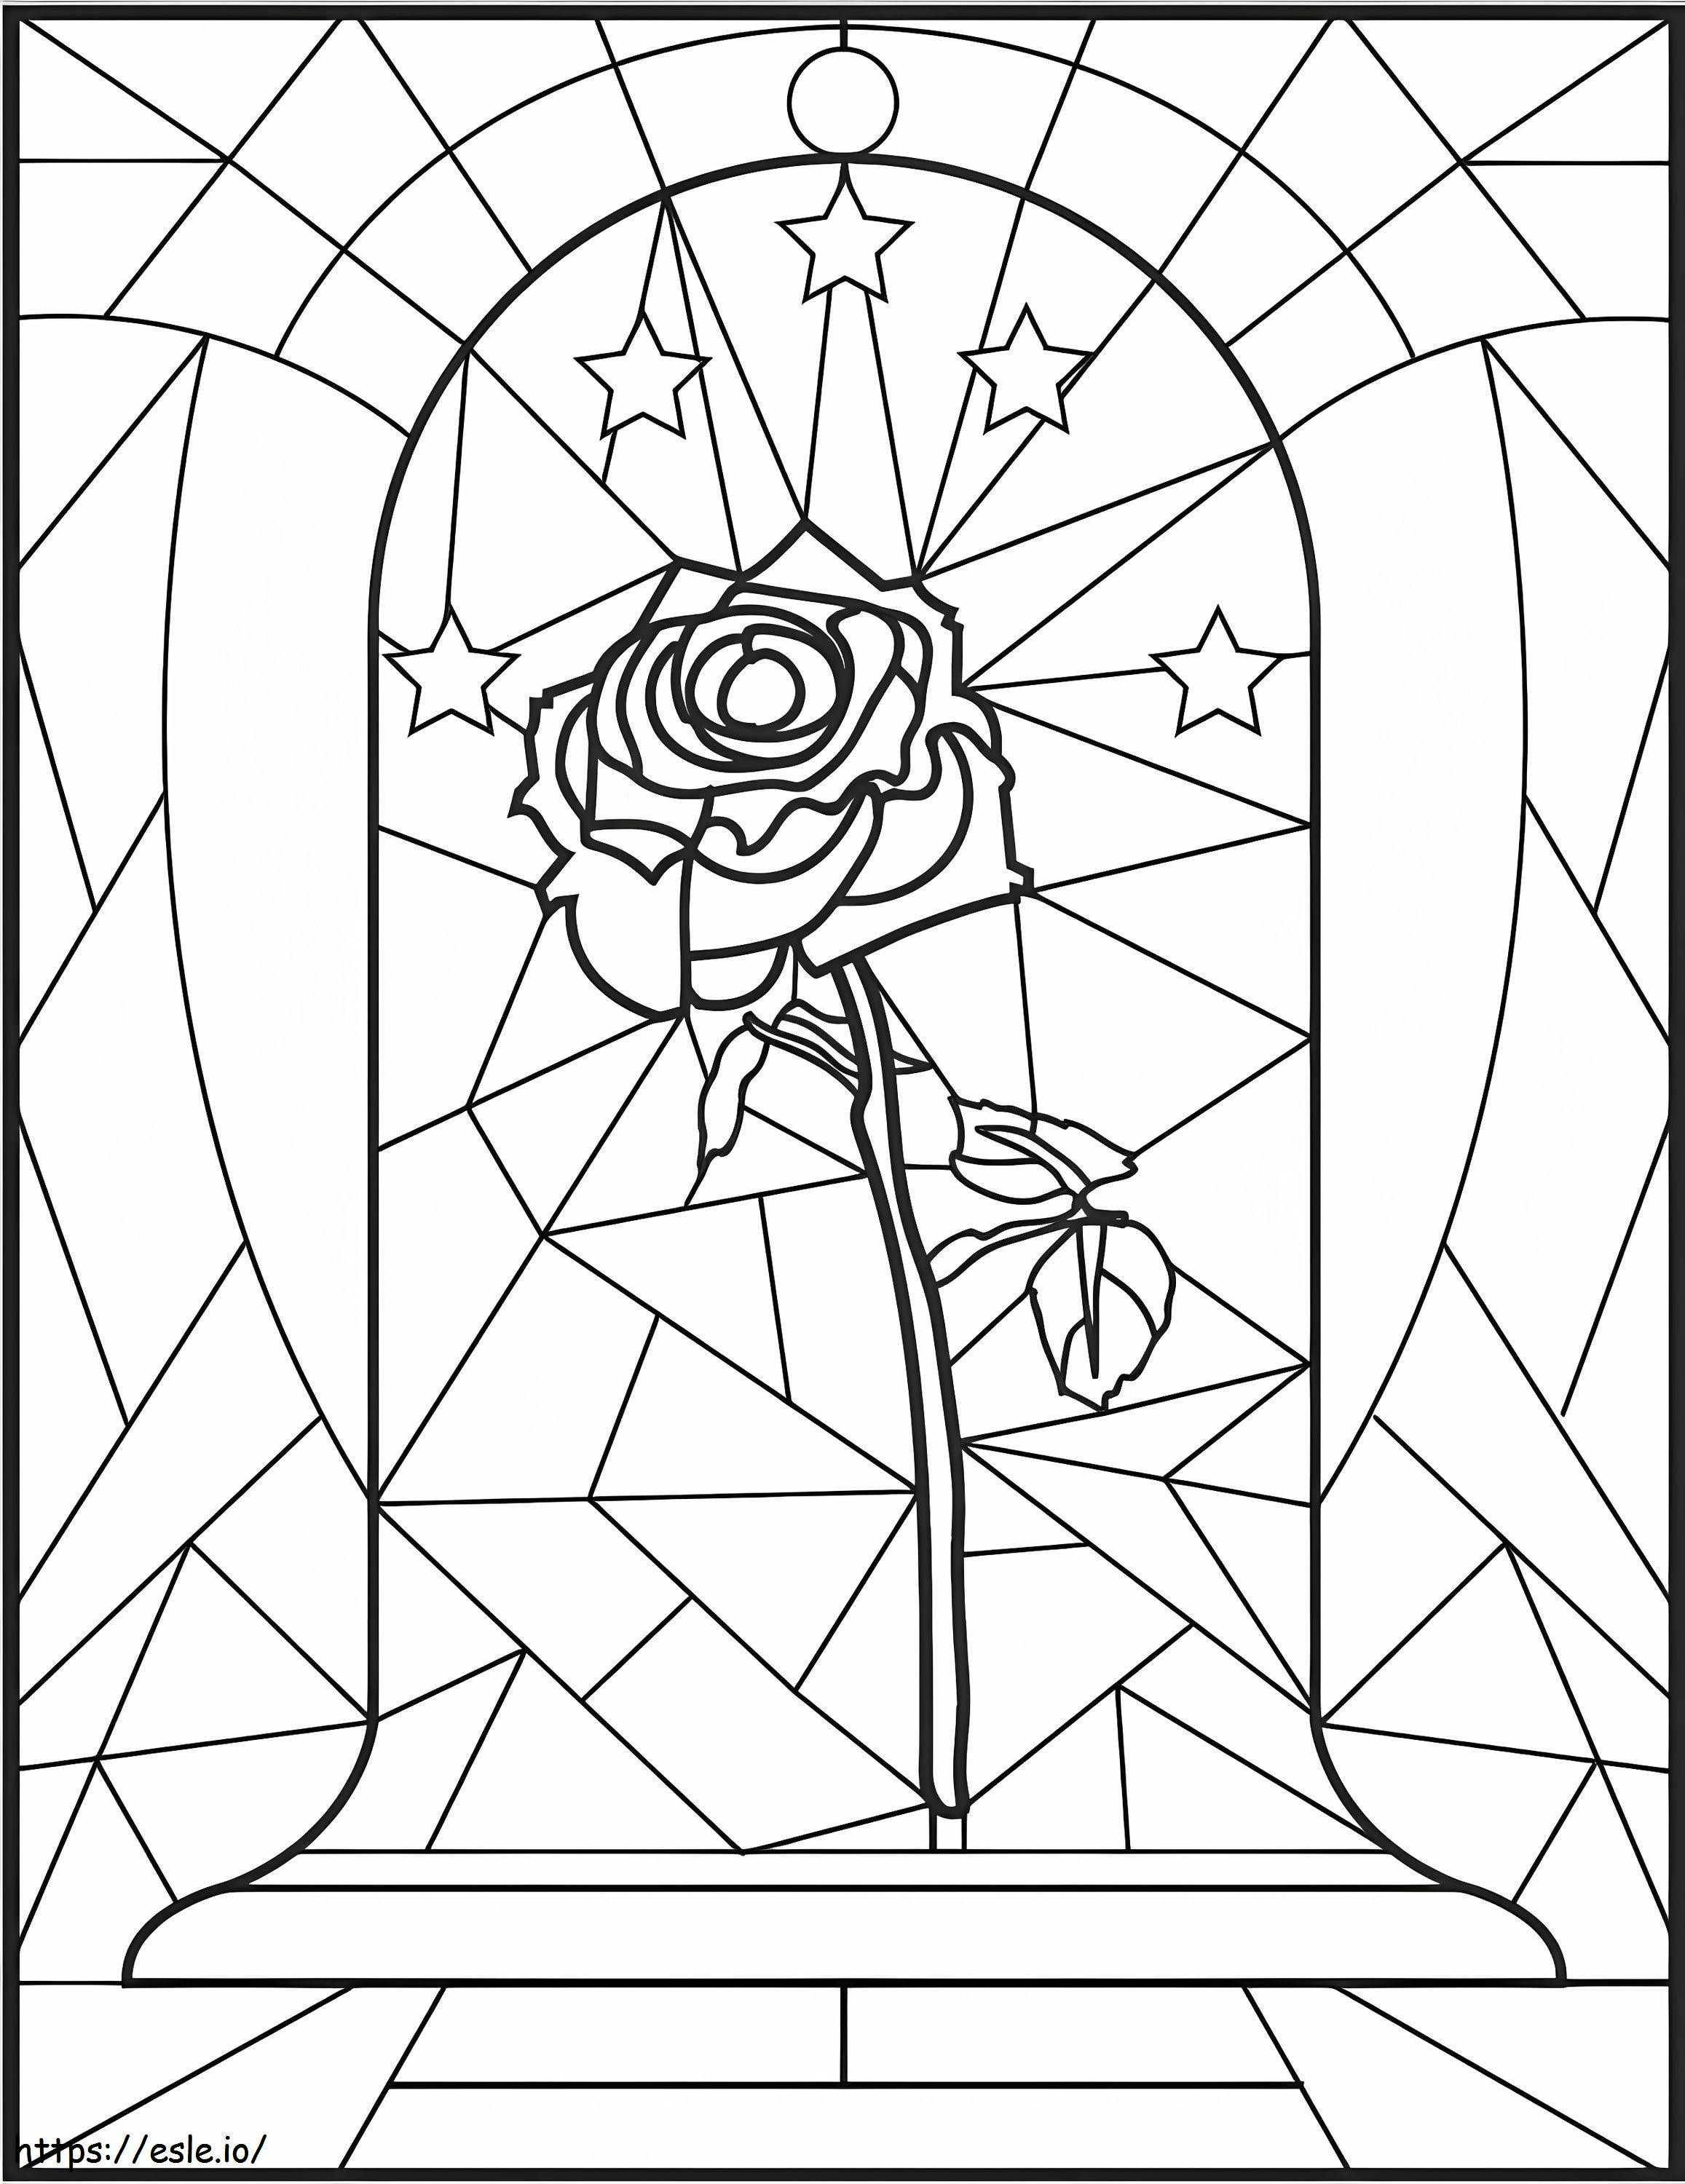 Coloriage Rose en vitrail à imprimer dessin